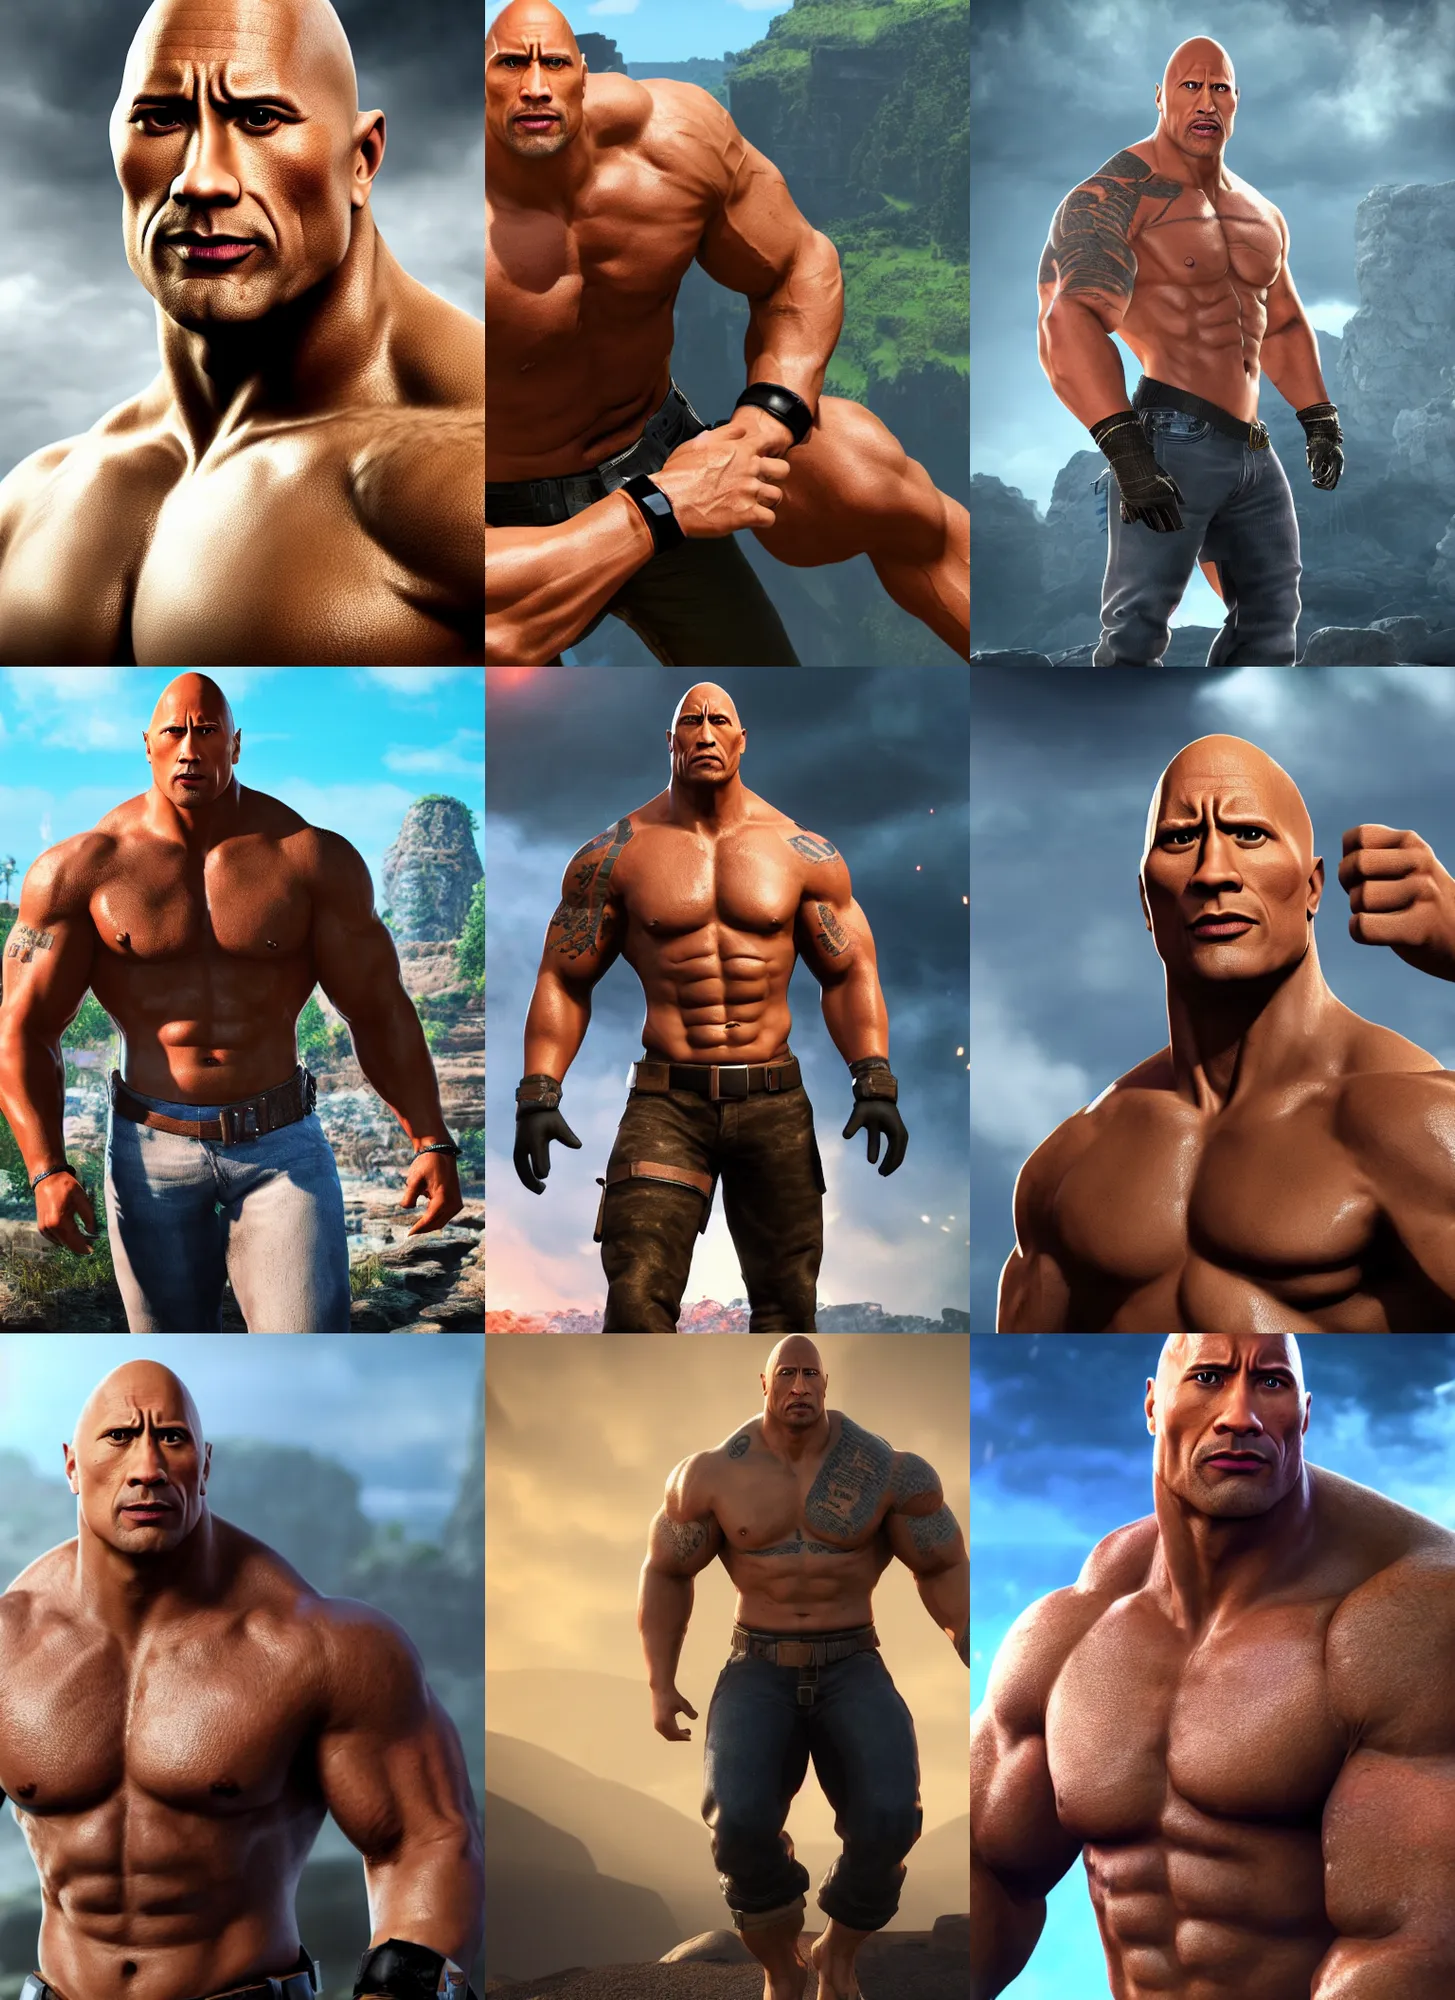 Prompt: Dwayne the rock Johnson as a video game character, digital art, unreal engine, unreal engine render, blender render, render, 4k, coherent